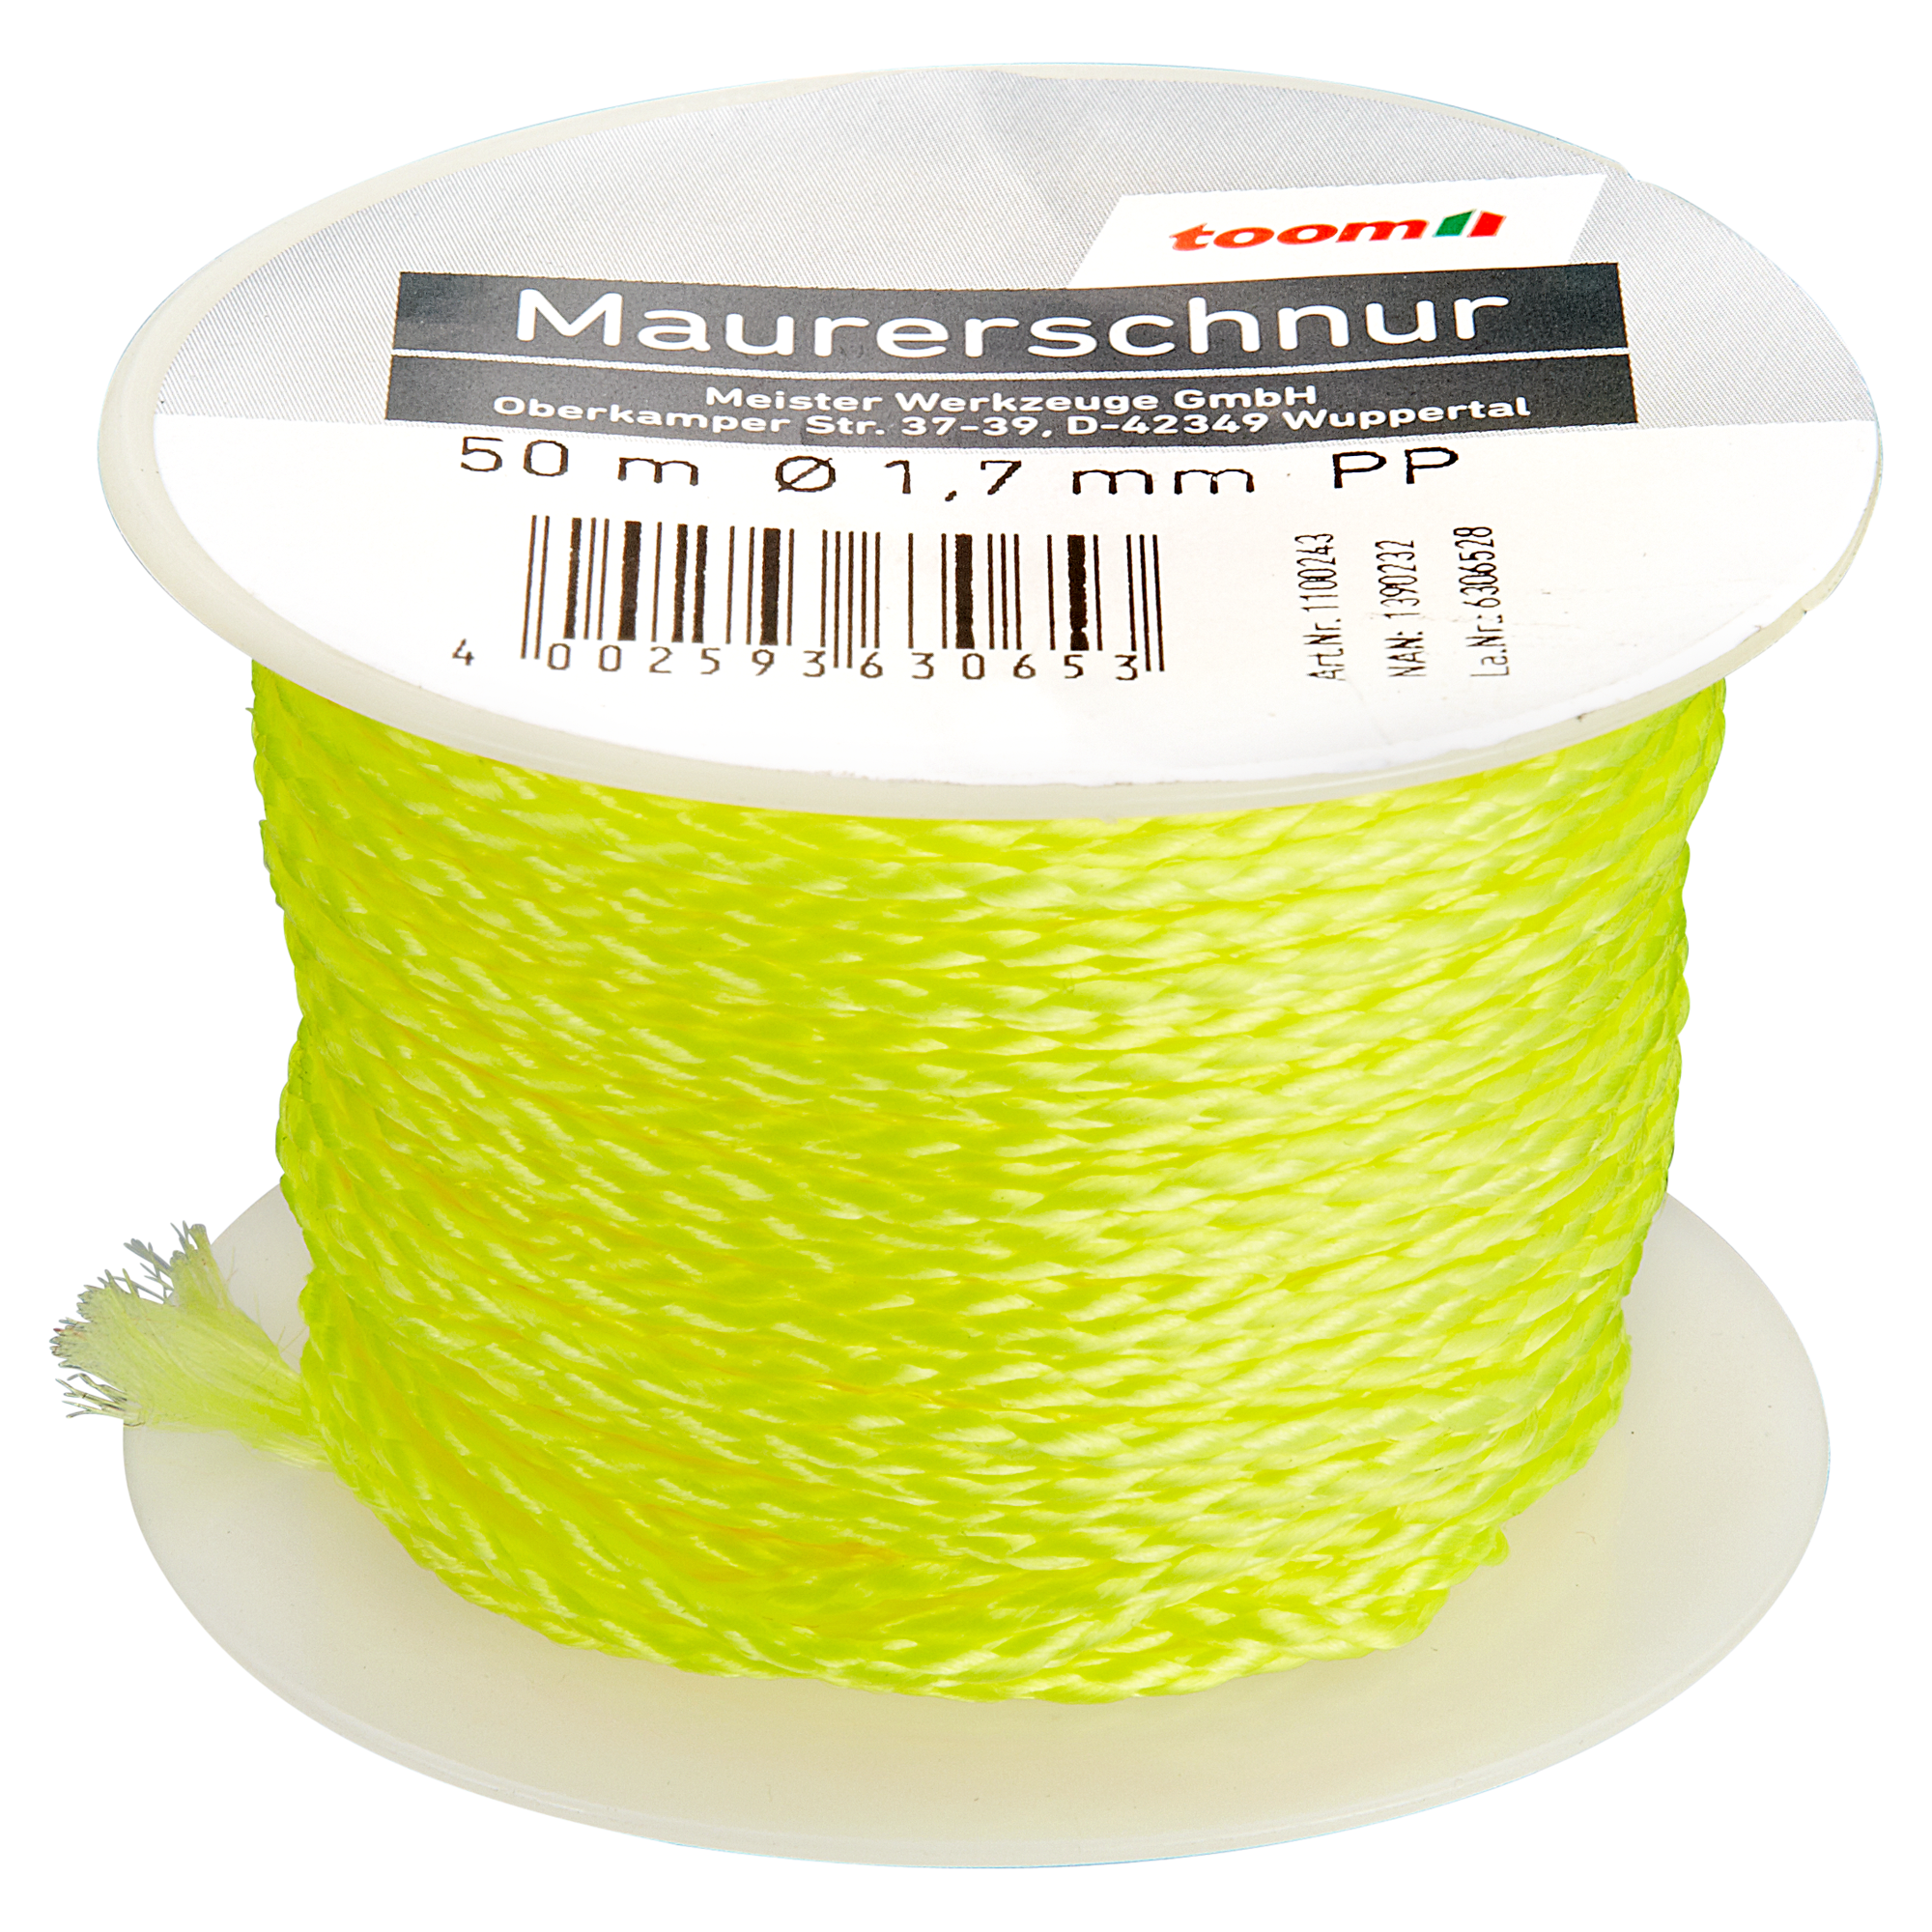 Maurerschnur gelb Ø 1,7 mm x 50 m + product picture